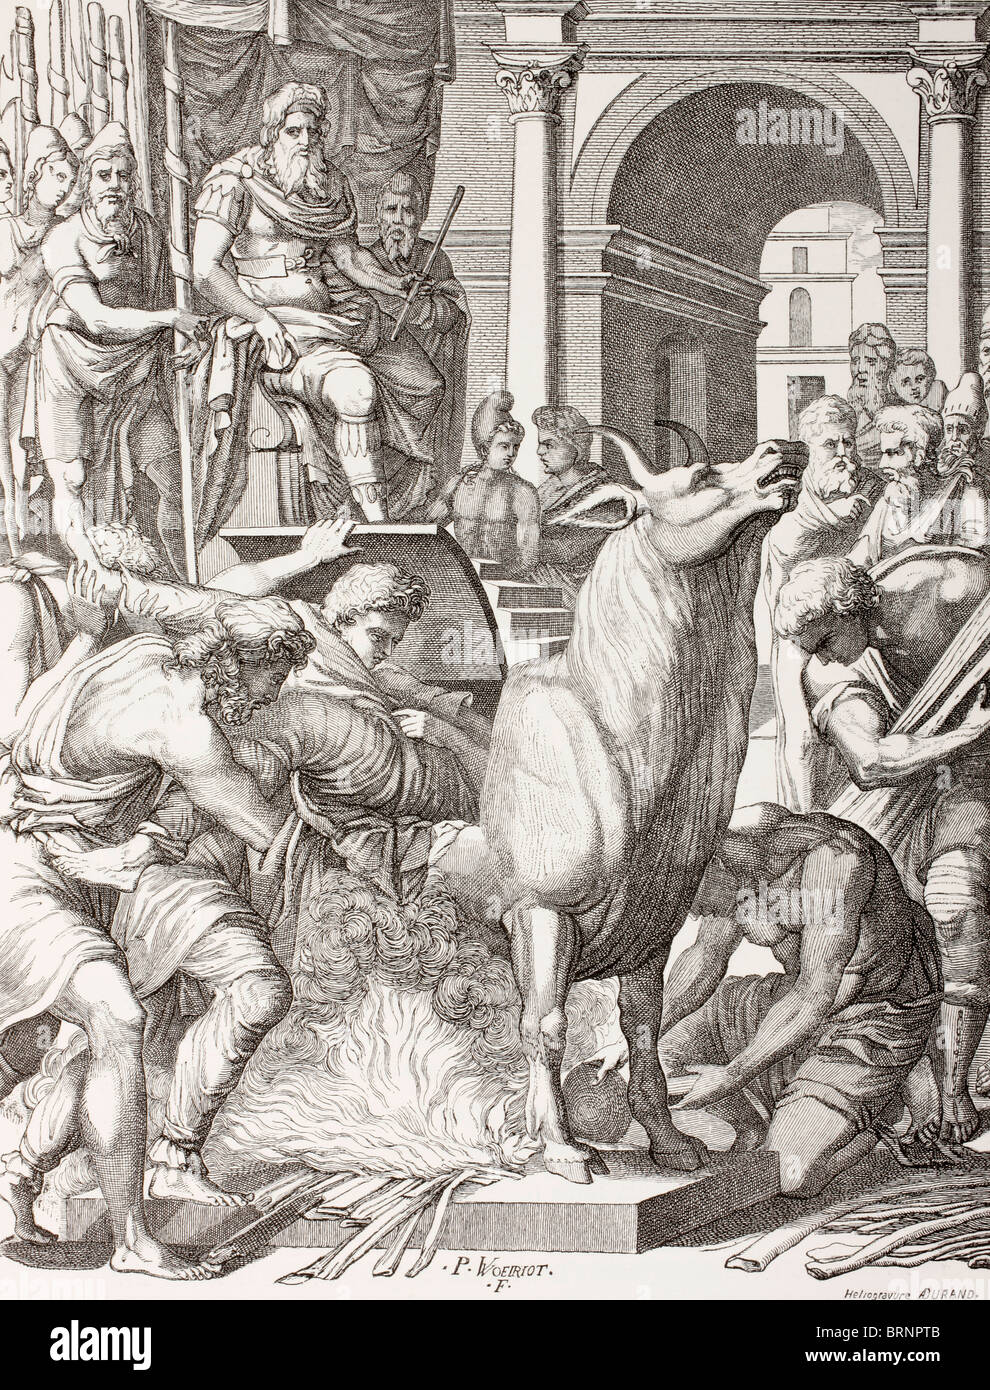 Phalaris le tyran d'Acragas (Agrigente, Sicile), condamnant le sculpteur Perillus à mourir dans le taureau en bronze. Banque D'Images